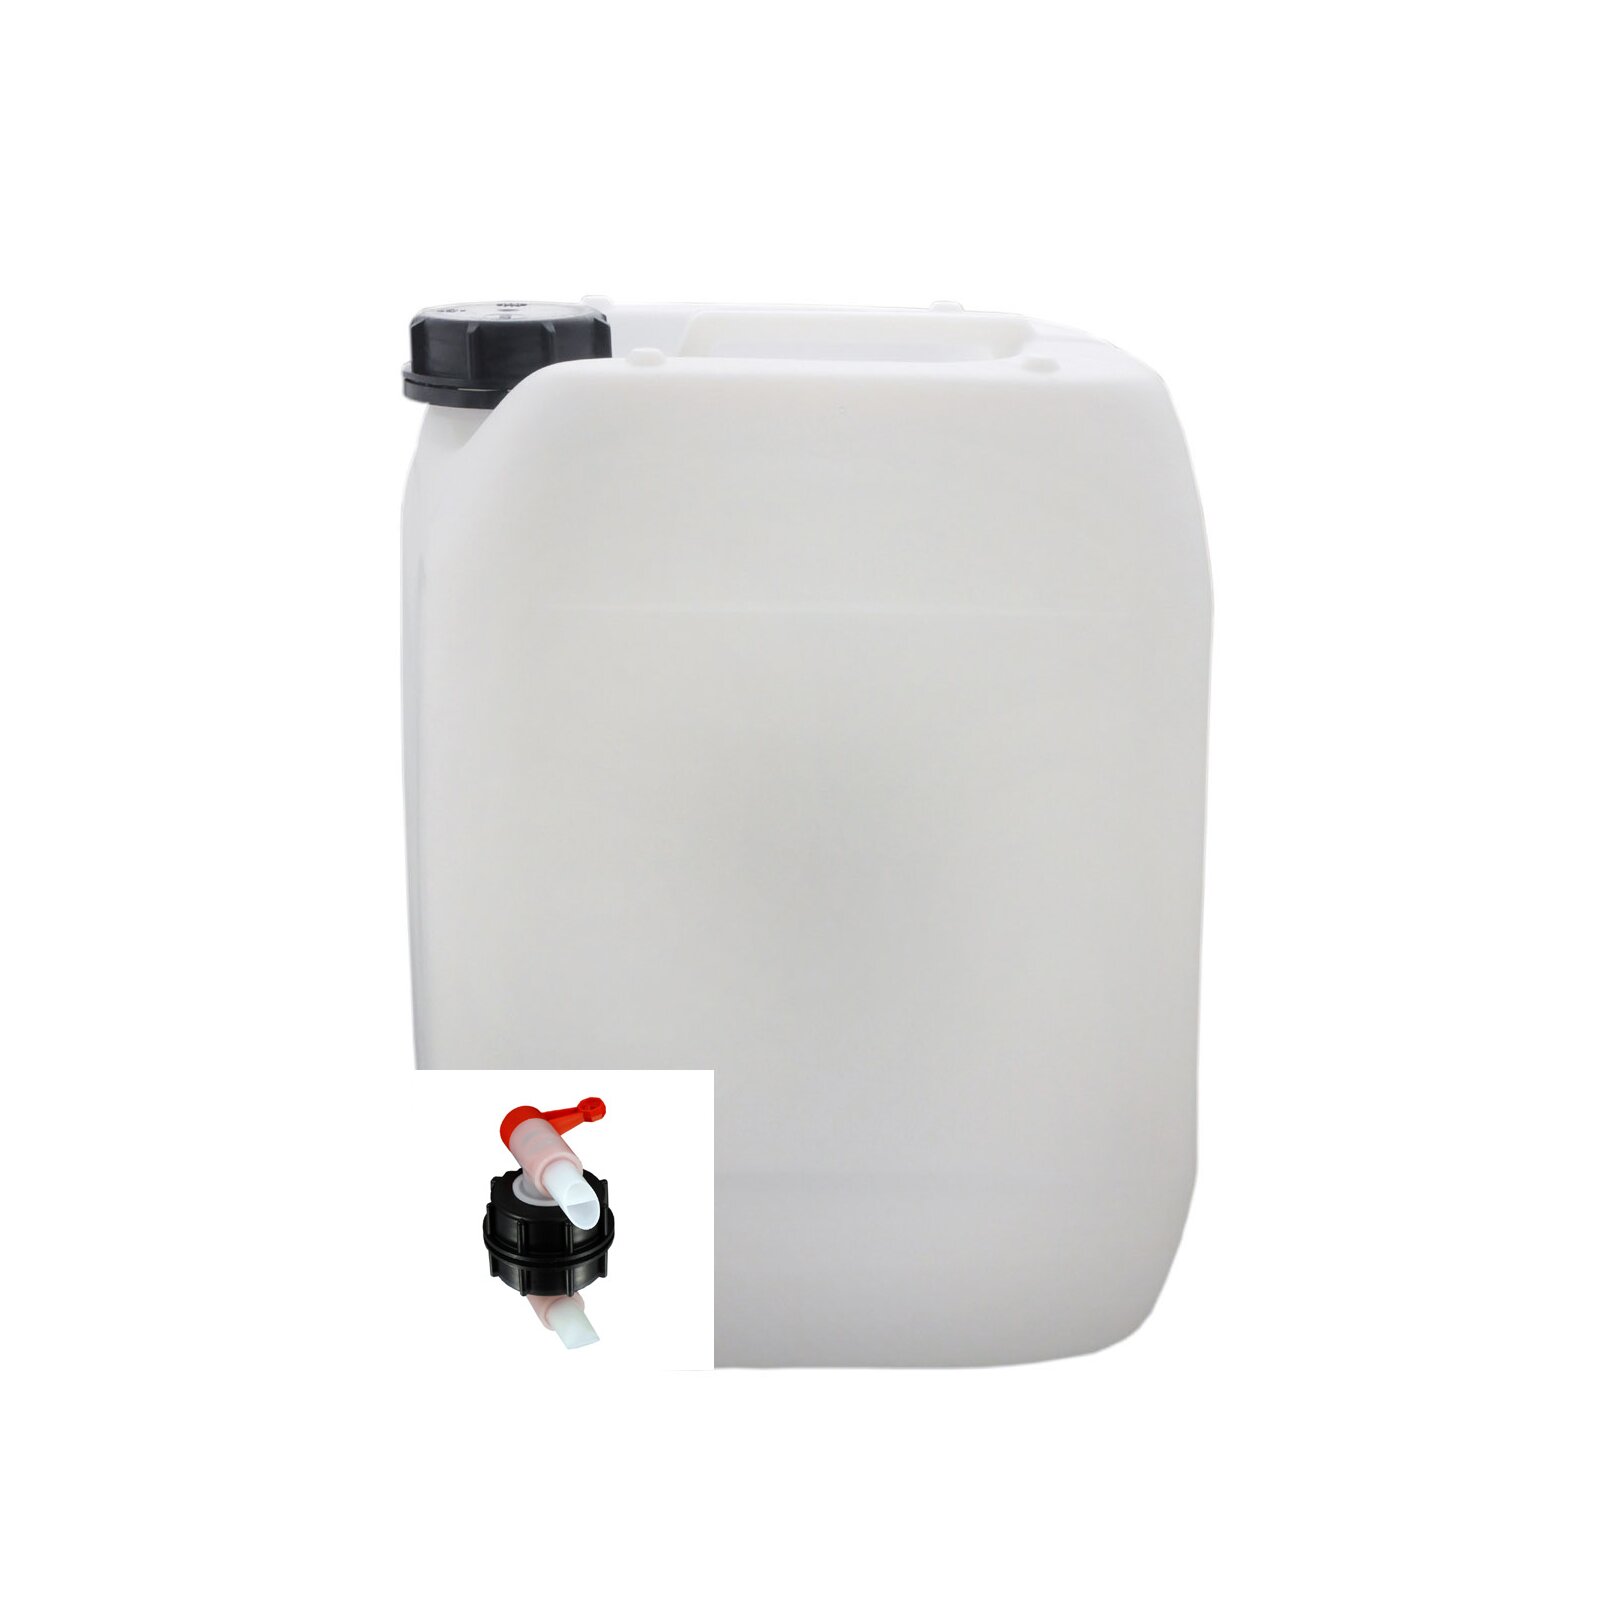 10xHahn 10 x 10 Liter 10 L Trinkwasserkanister Kunststoffkanister natur DIN45 